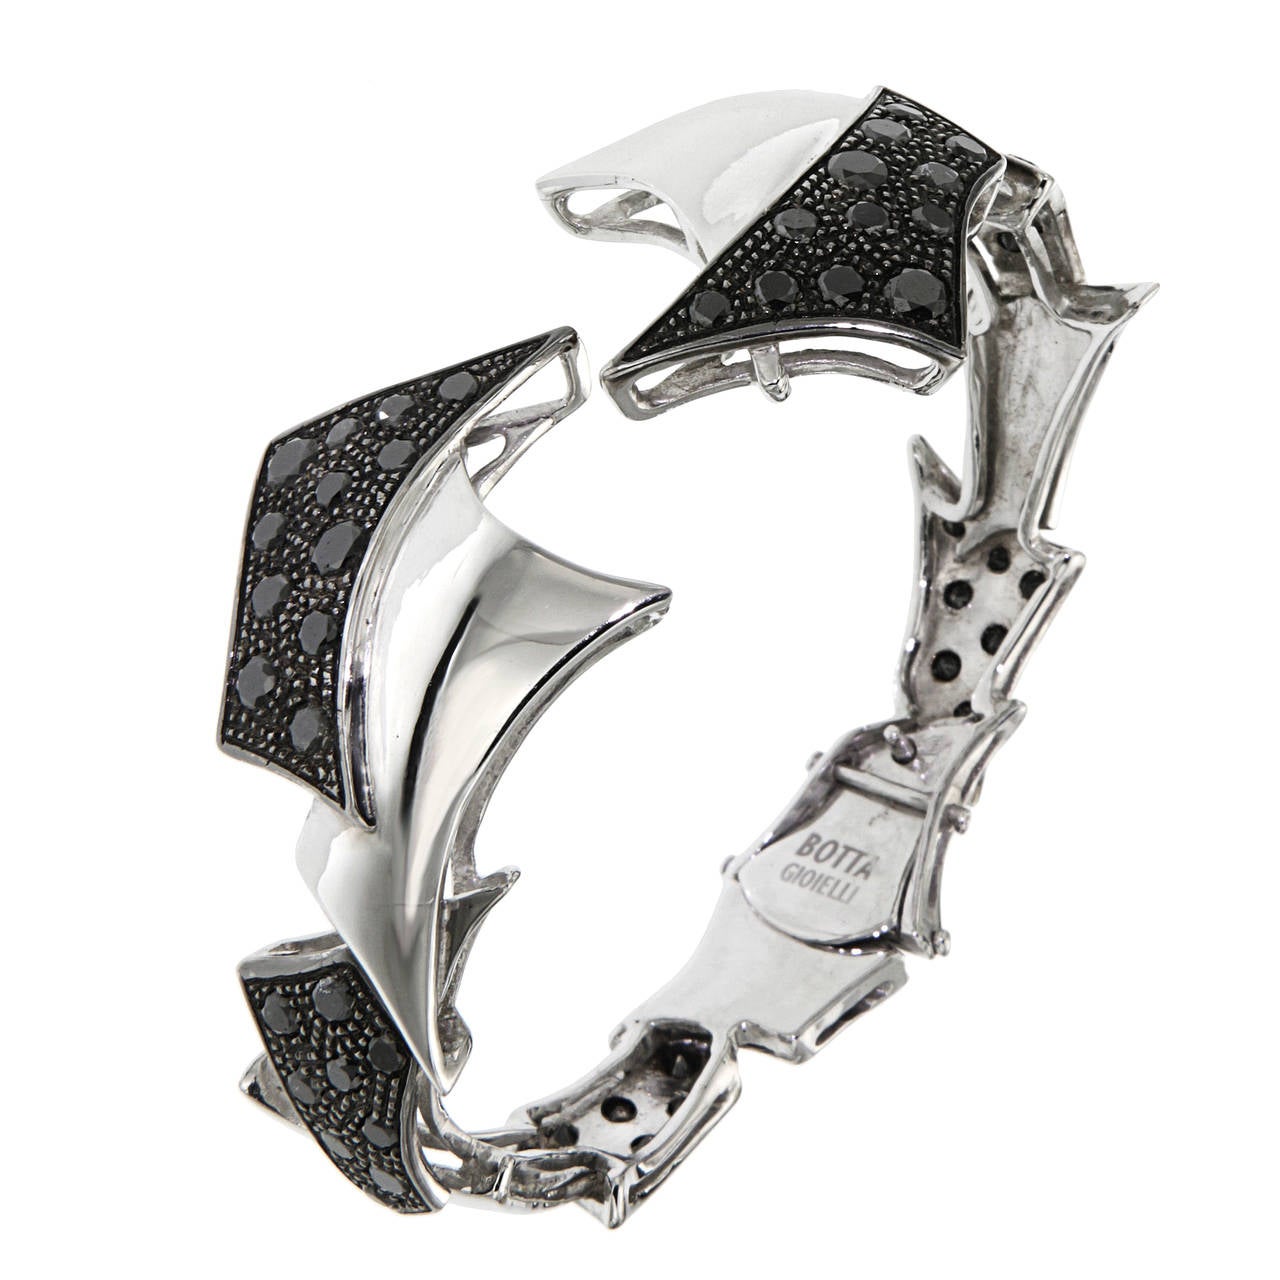 Bracelet en or blanc et diamants noirs fabriqué à la main en Italie par Botta Gioielli